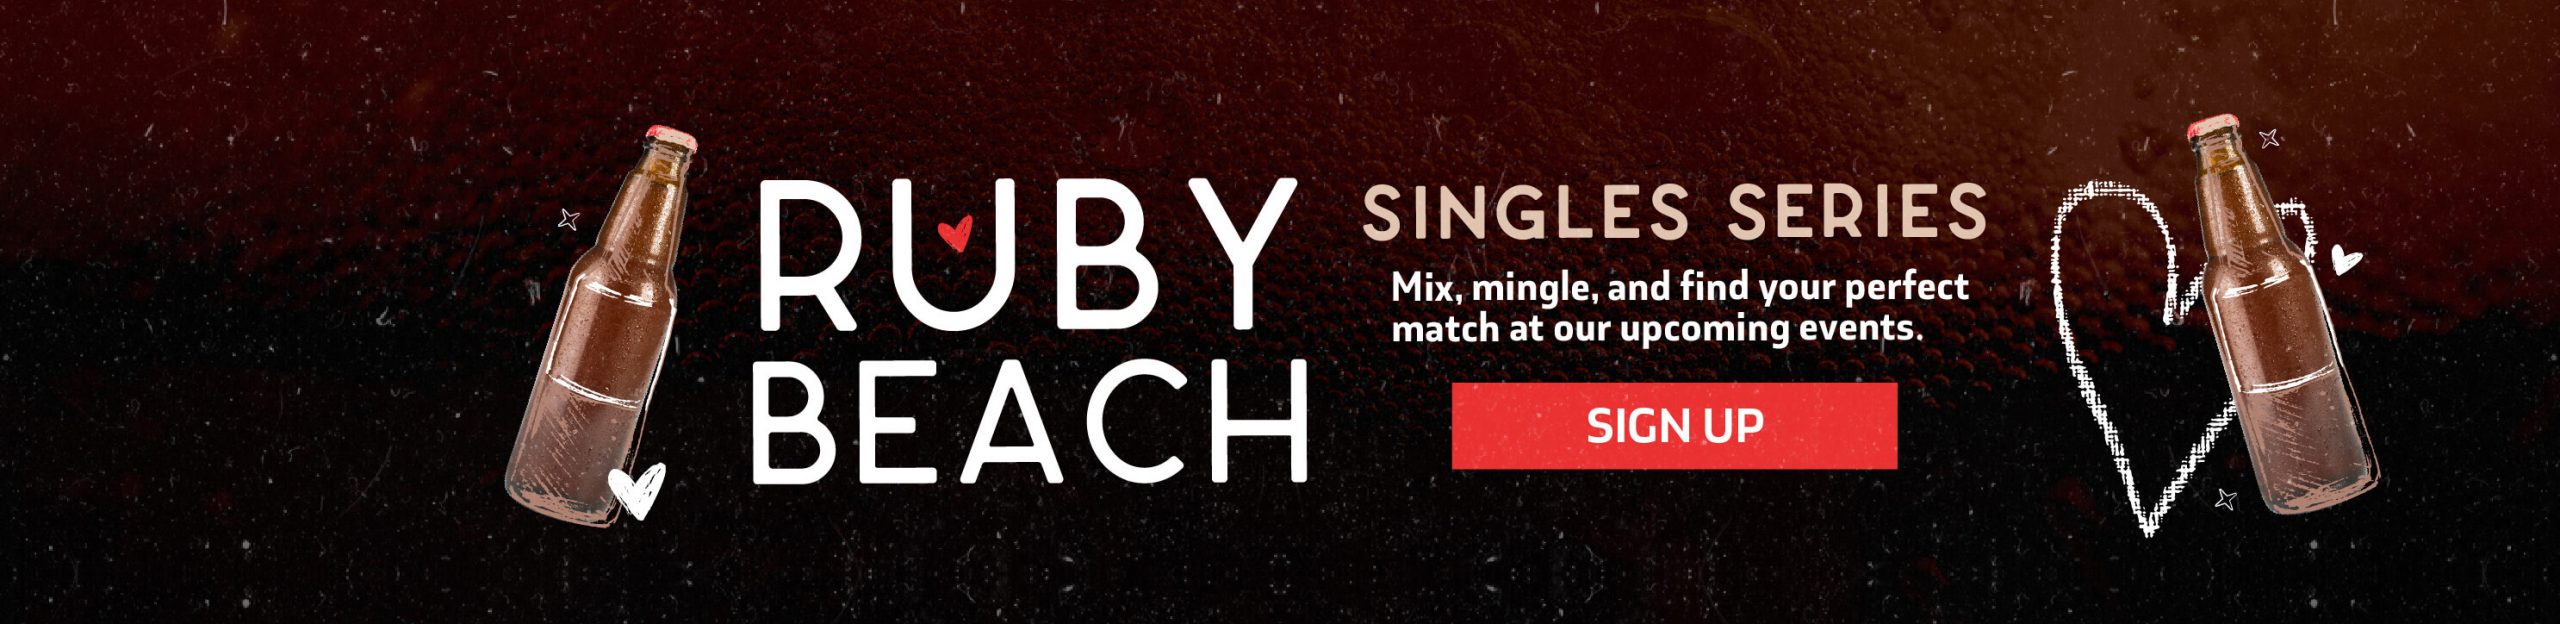 JAX Fray Ruby Beach Singles Series